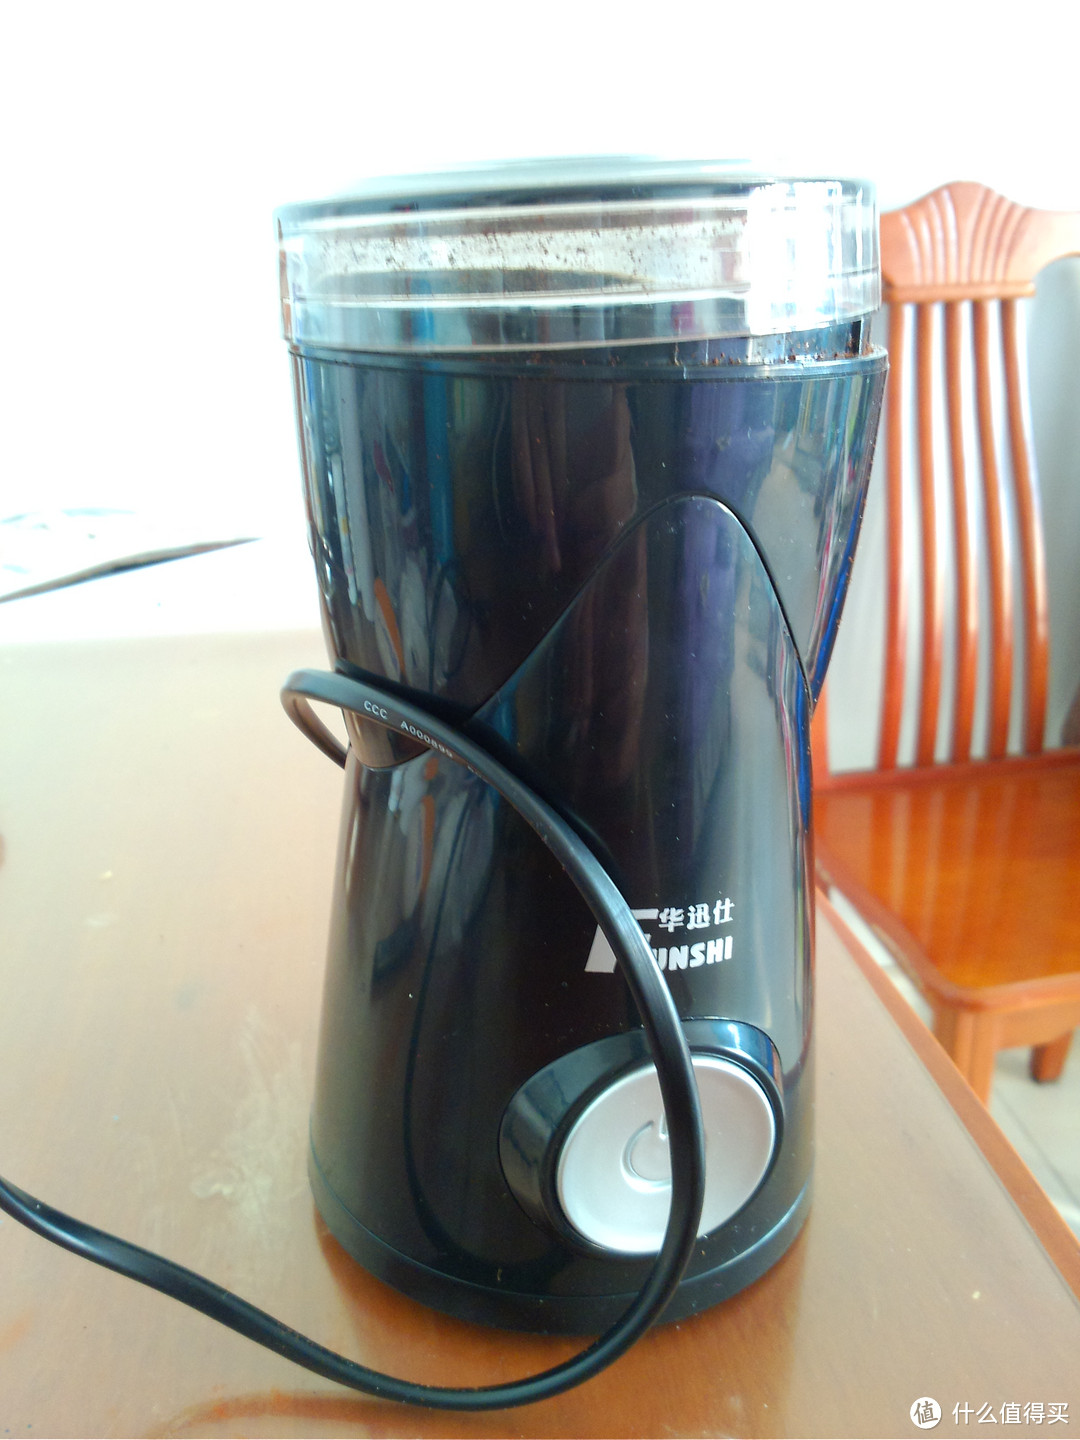 品质生活的最低需求：Fxunshi 华迅仕 MD-2000 意式蒸汽压力咖啡机 和 磨豆机